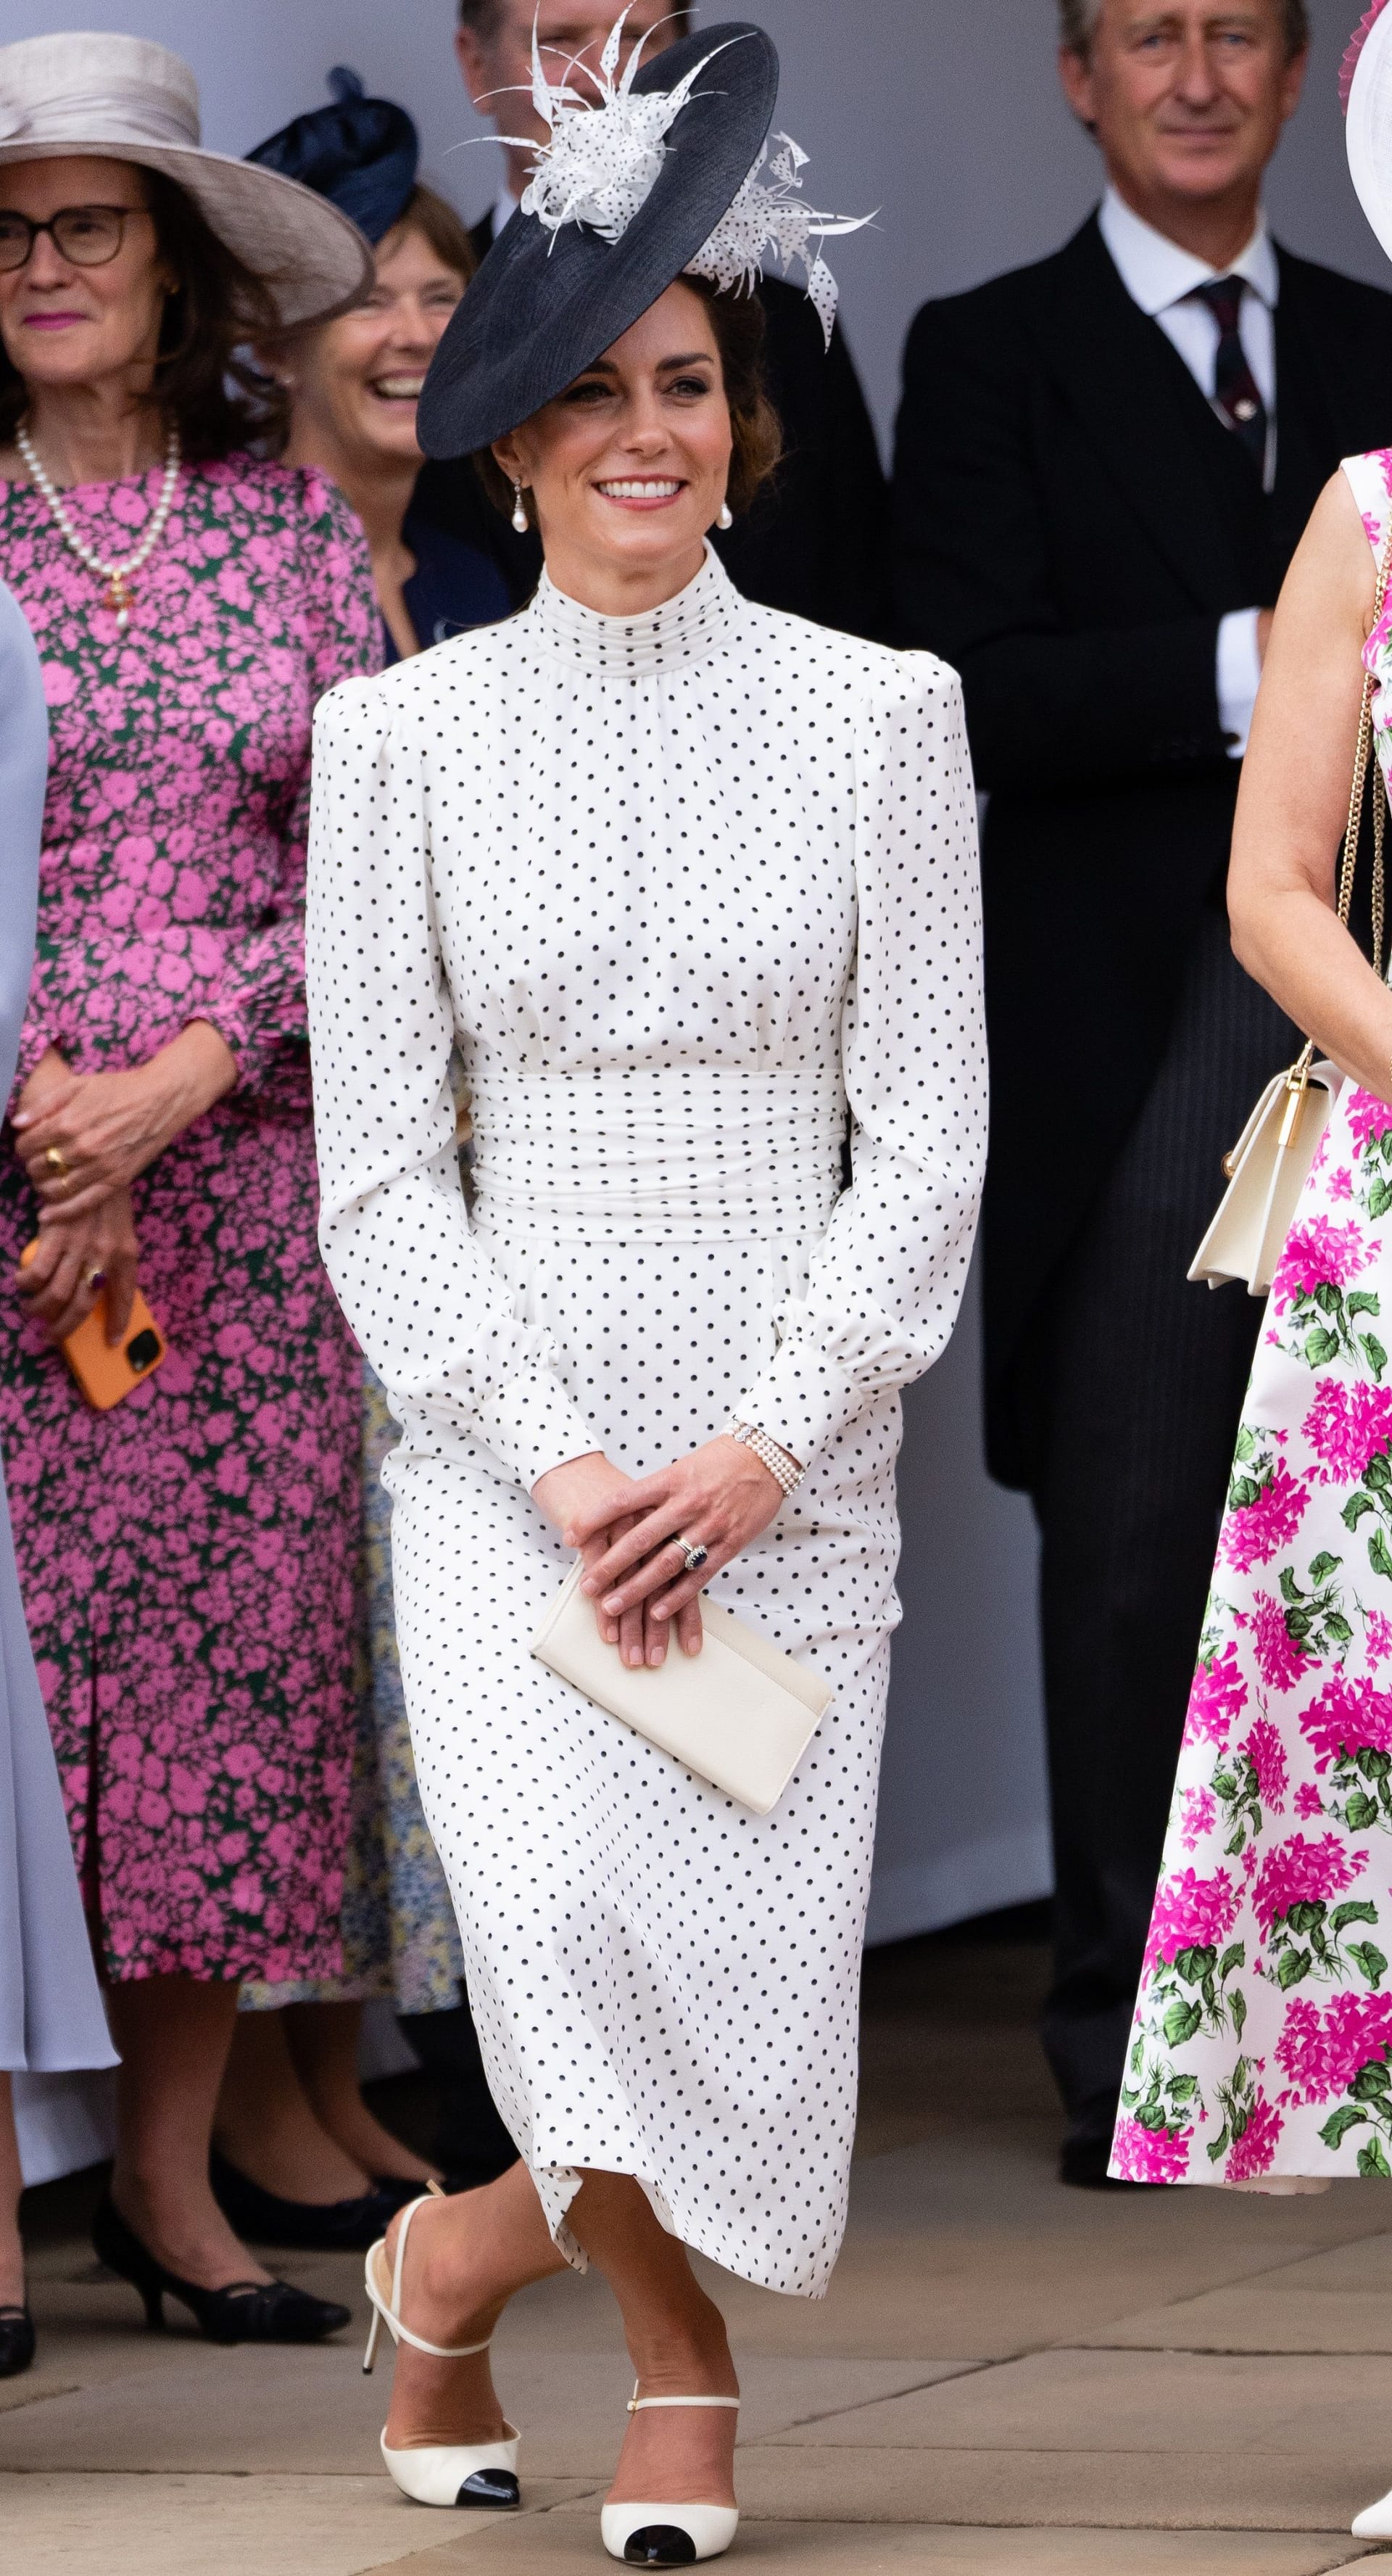 Prinzessin Kate zeigt sich knicksend in ihrem gepunkteten Kleid.